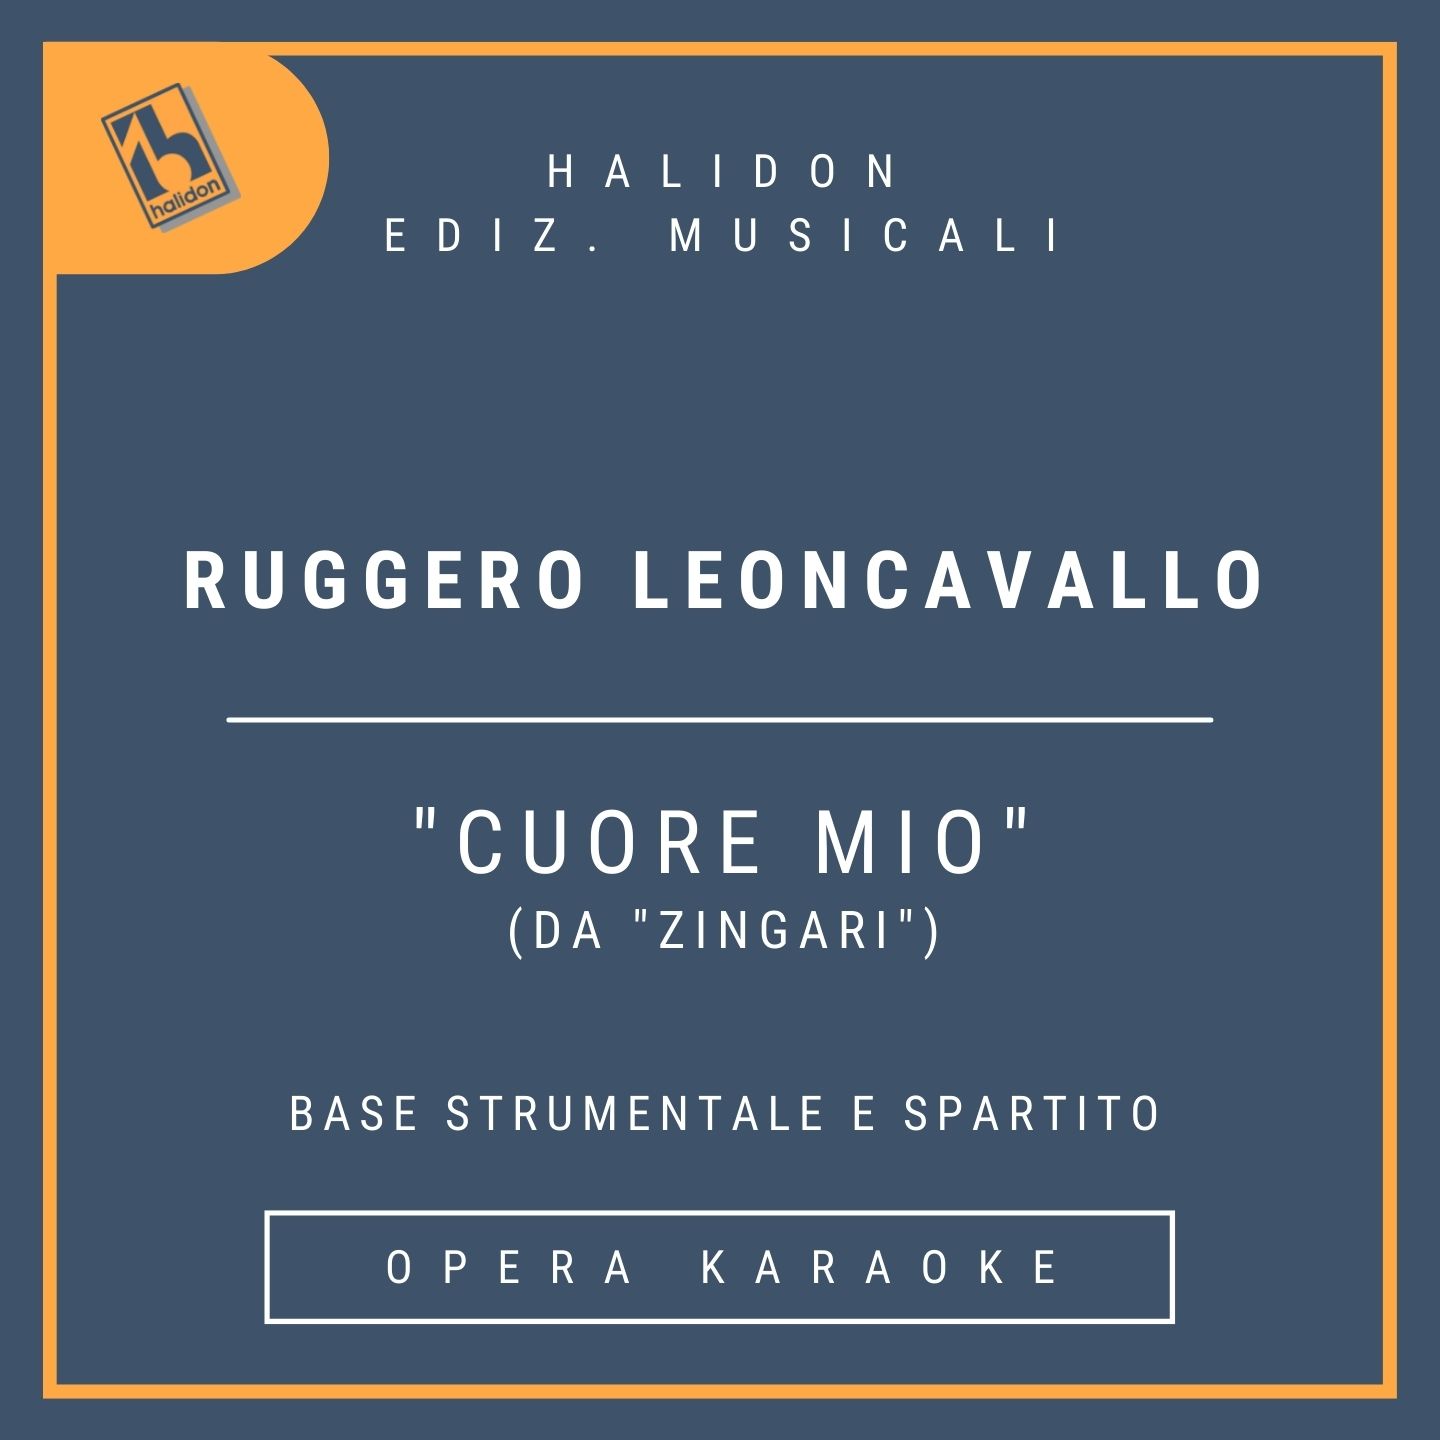 Ruggero Leoncavallo - Cuore mio (da 'Zingari') - Aria di Fleana (soprano drammatico) - Base strumentale + spartito